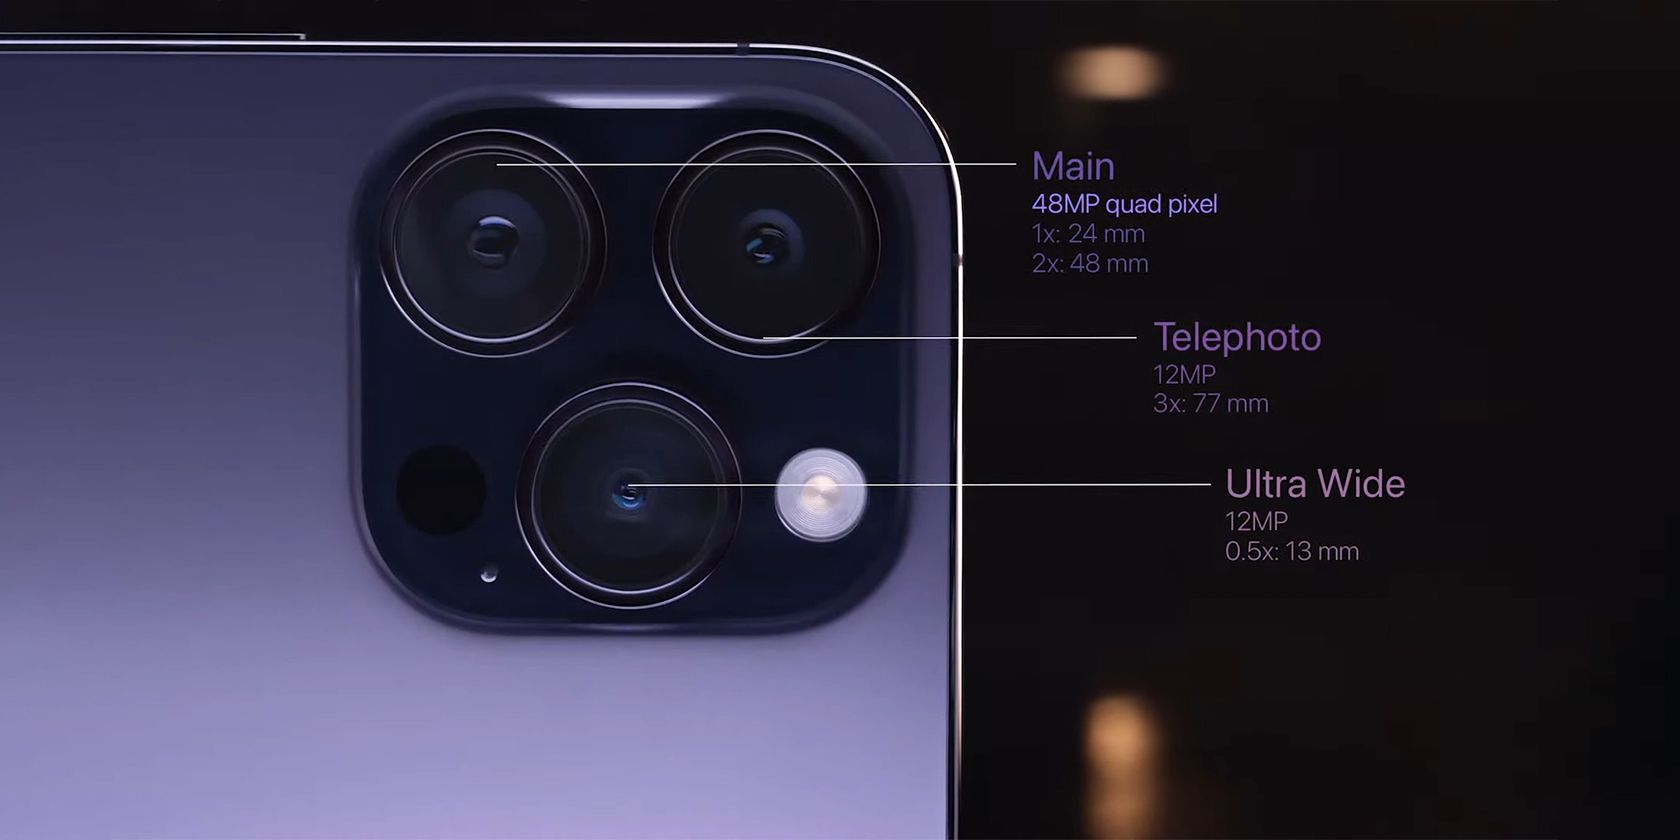 iPhone megapixels cameras